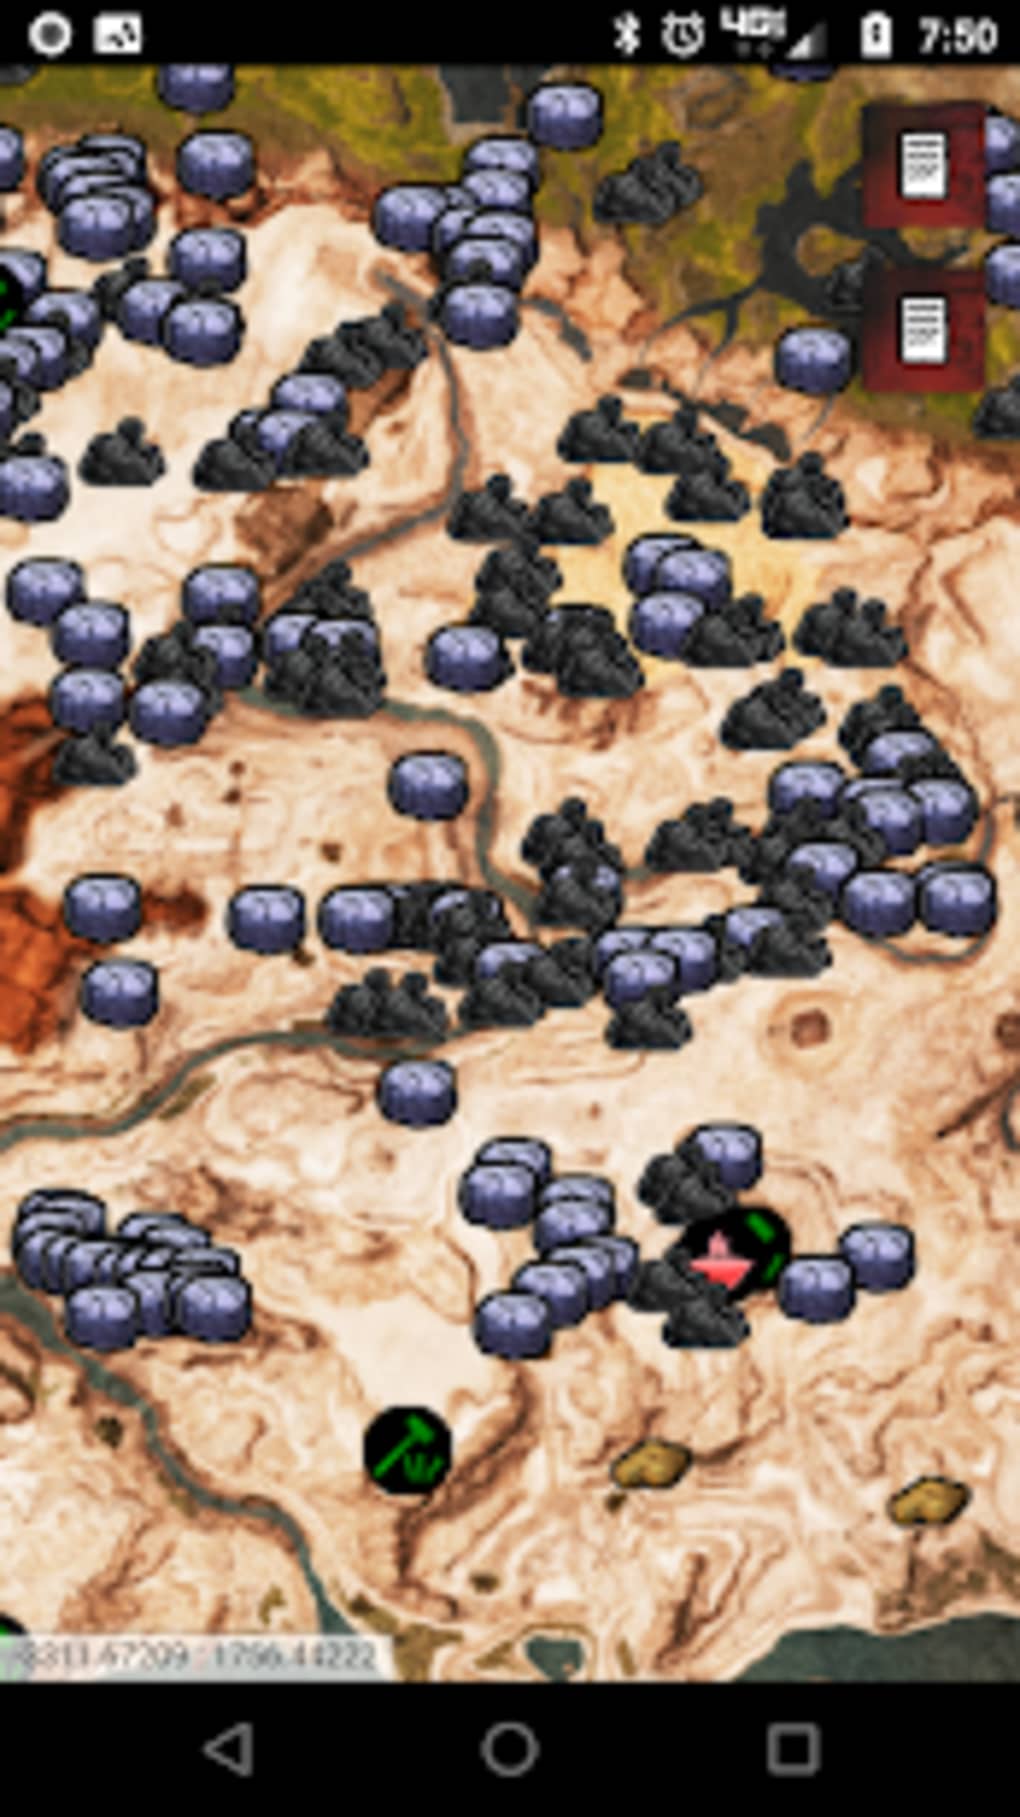 conan exiles marker map interactive